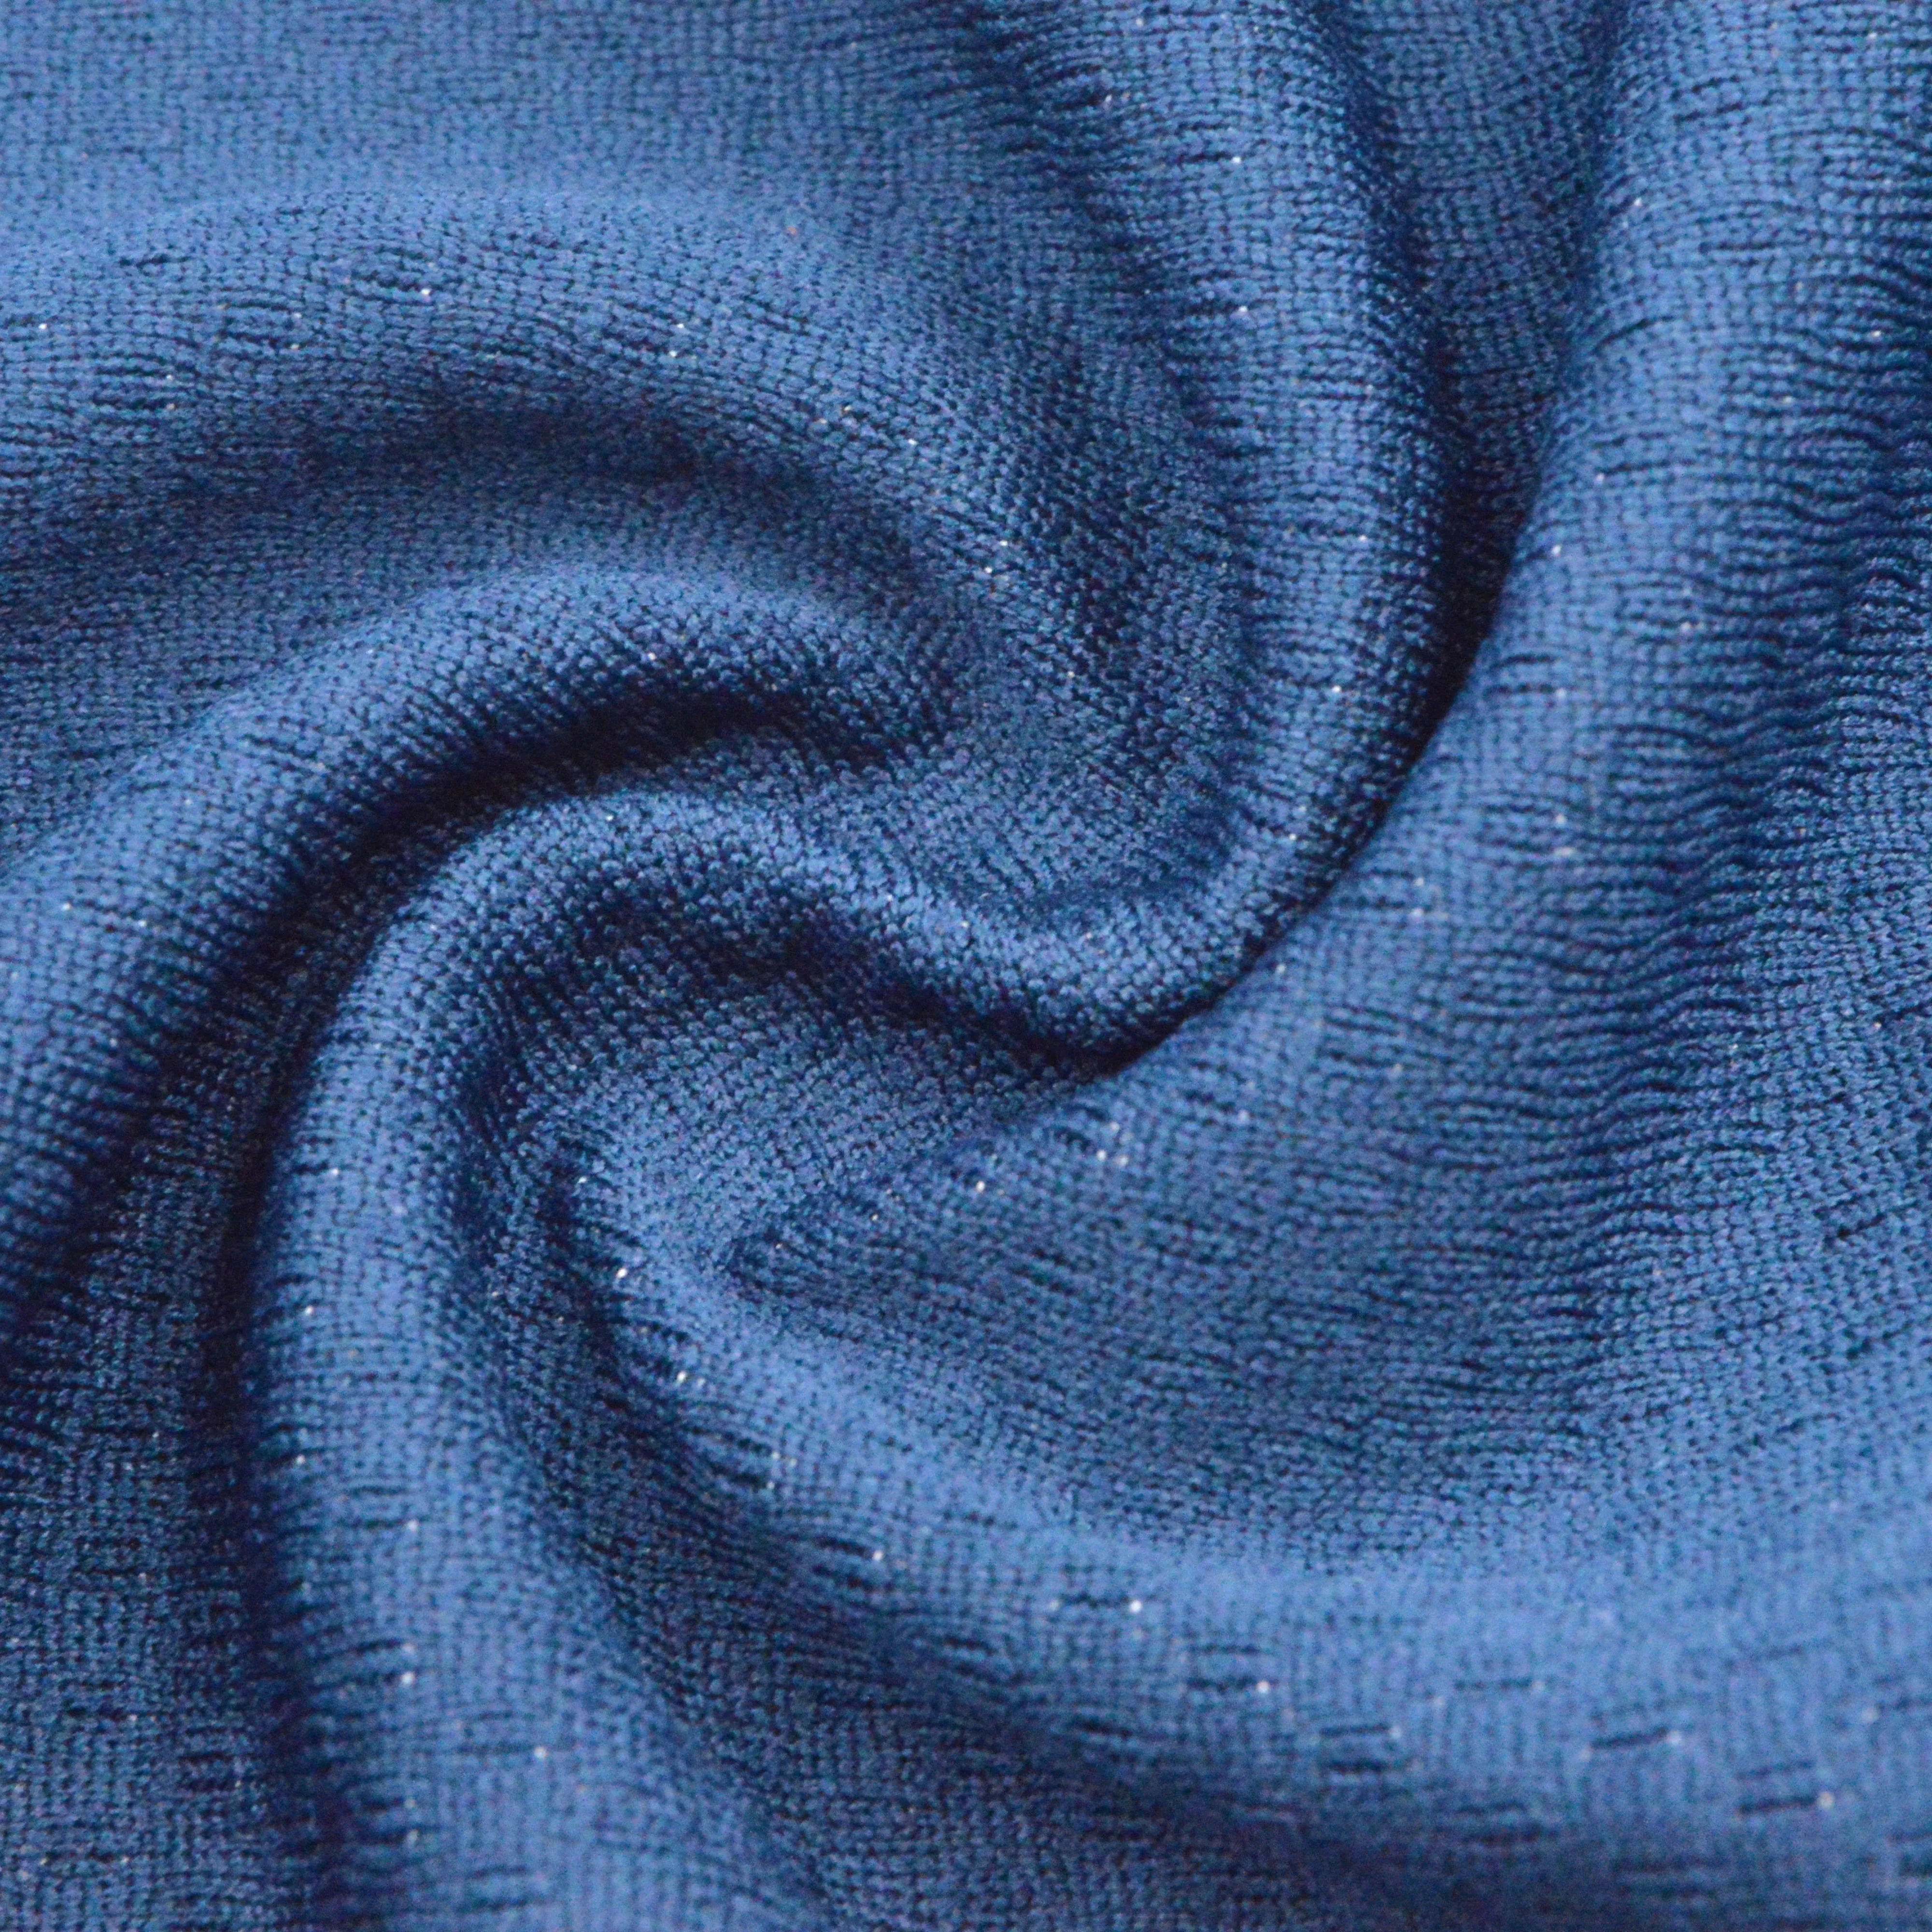 ถักผ้า Jacquard แห้งภายใน57% โพลีเอสเตอร์43% โพรพิลีนแห้งเร็วระบายอากาศสำหรับเสื้อยืดหรือชุดกีฬา